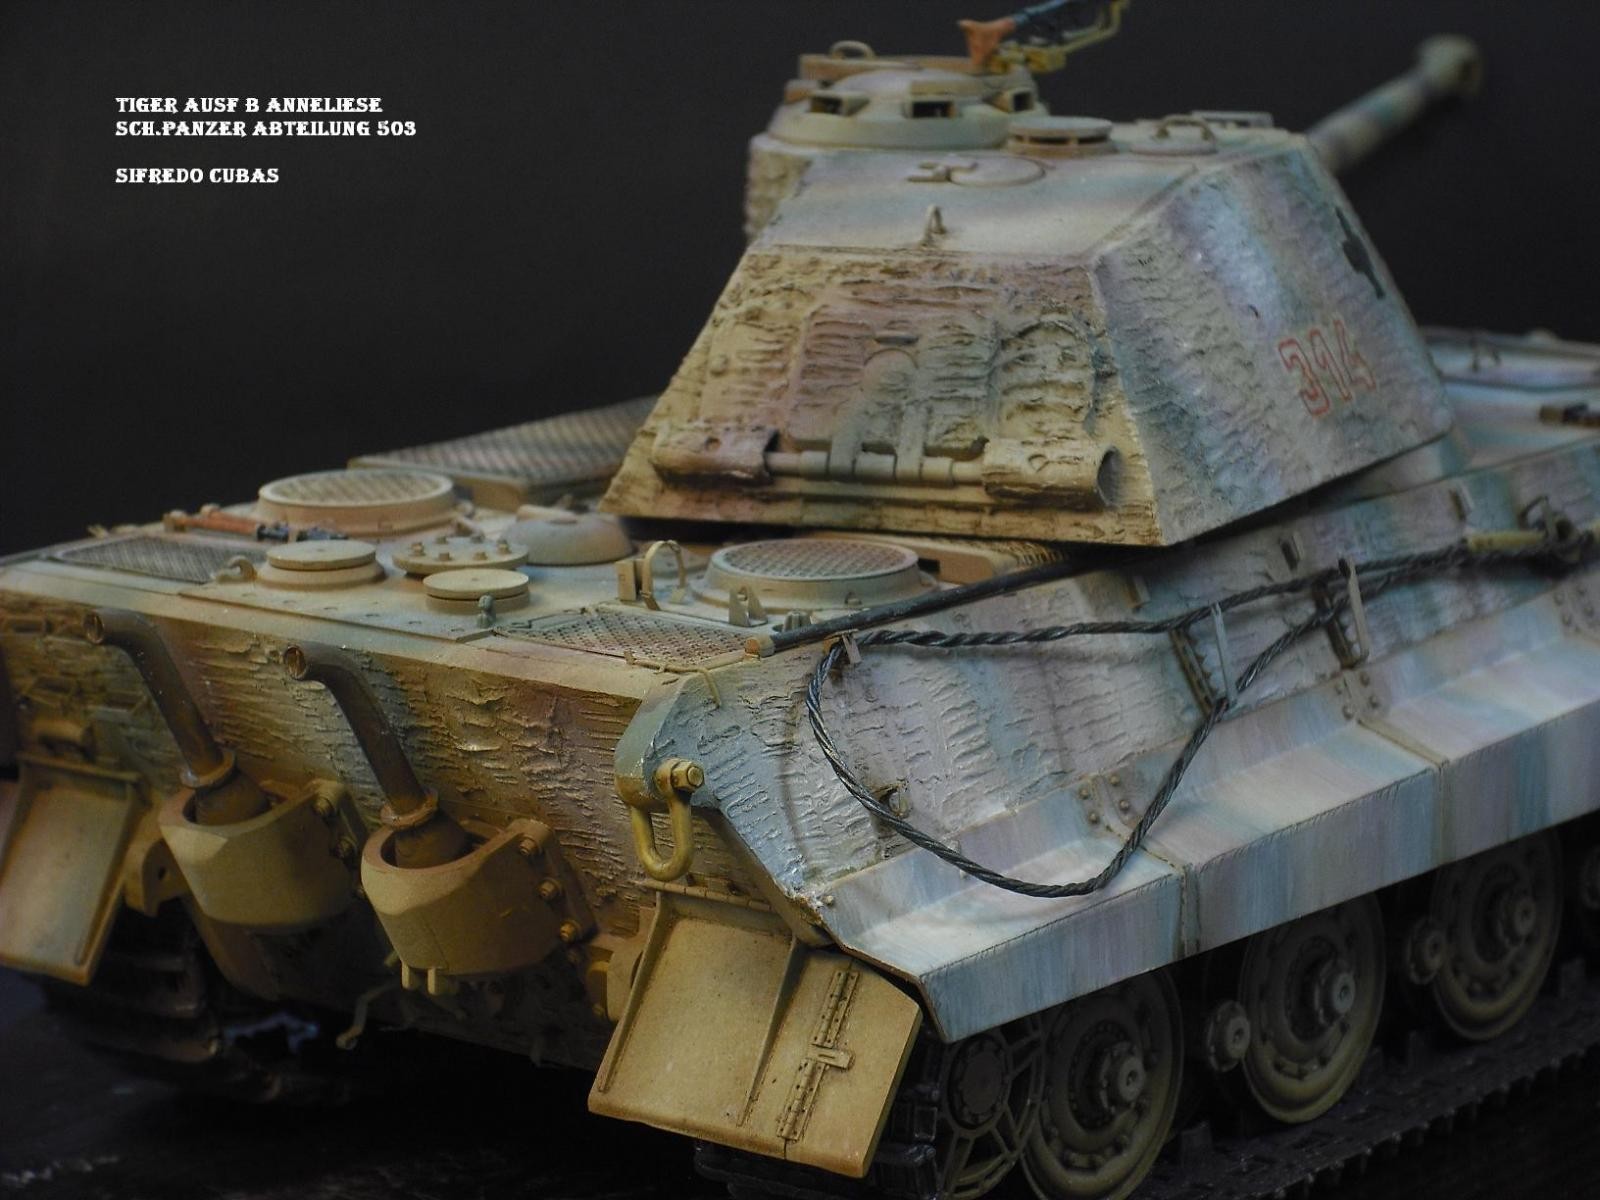 Tiger Ausf B Anneliese Schw Panzer Abt K Nigstiger Pz